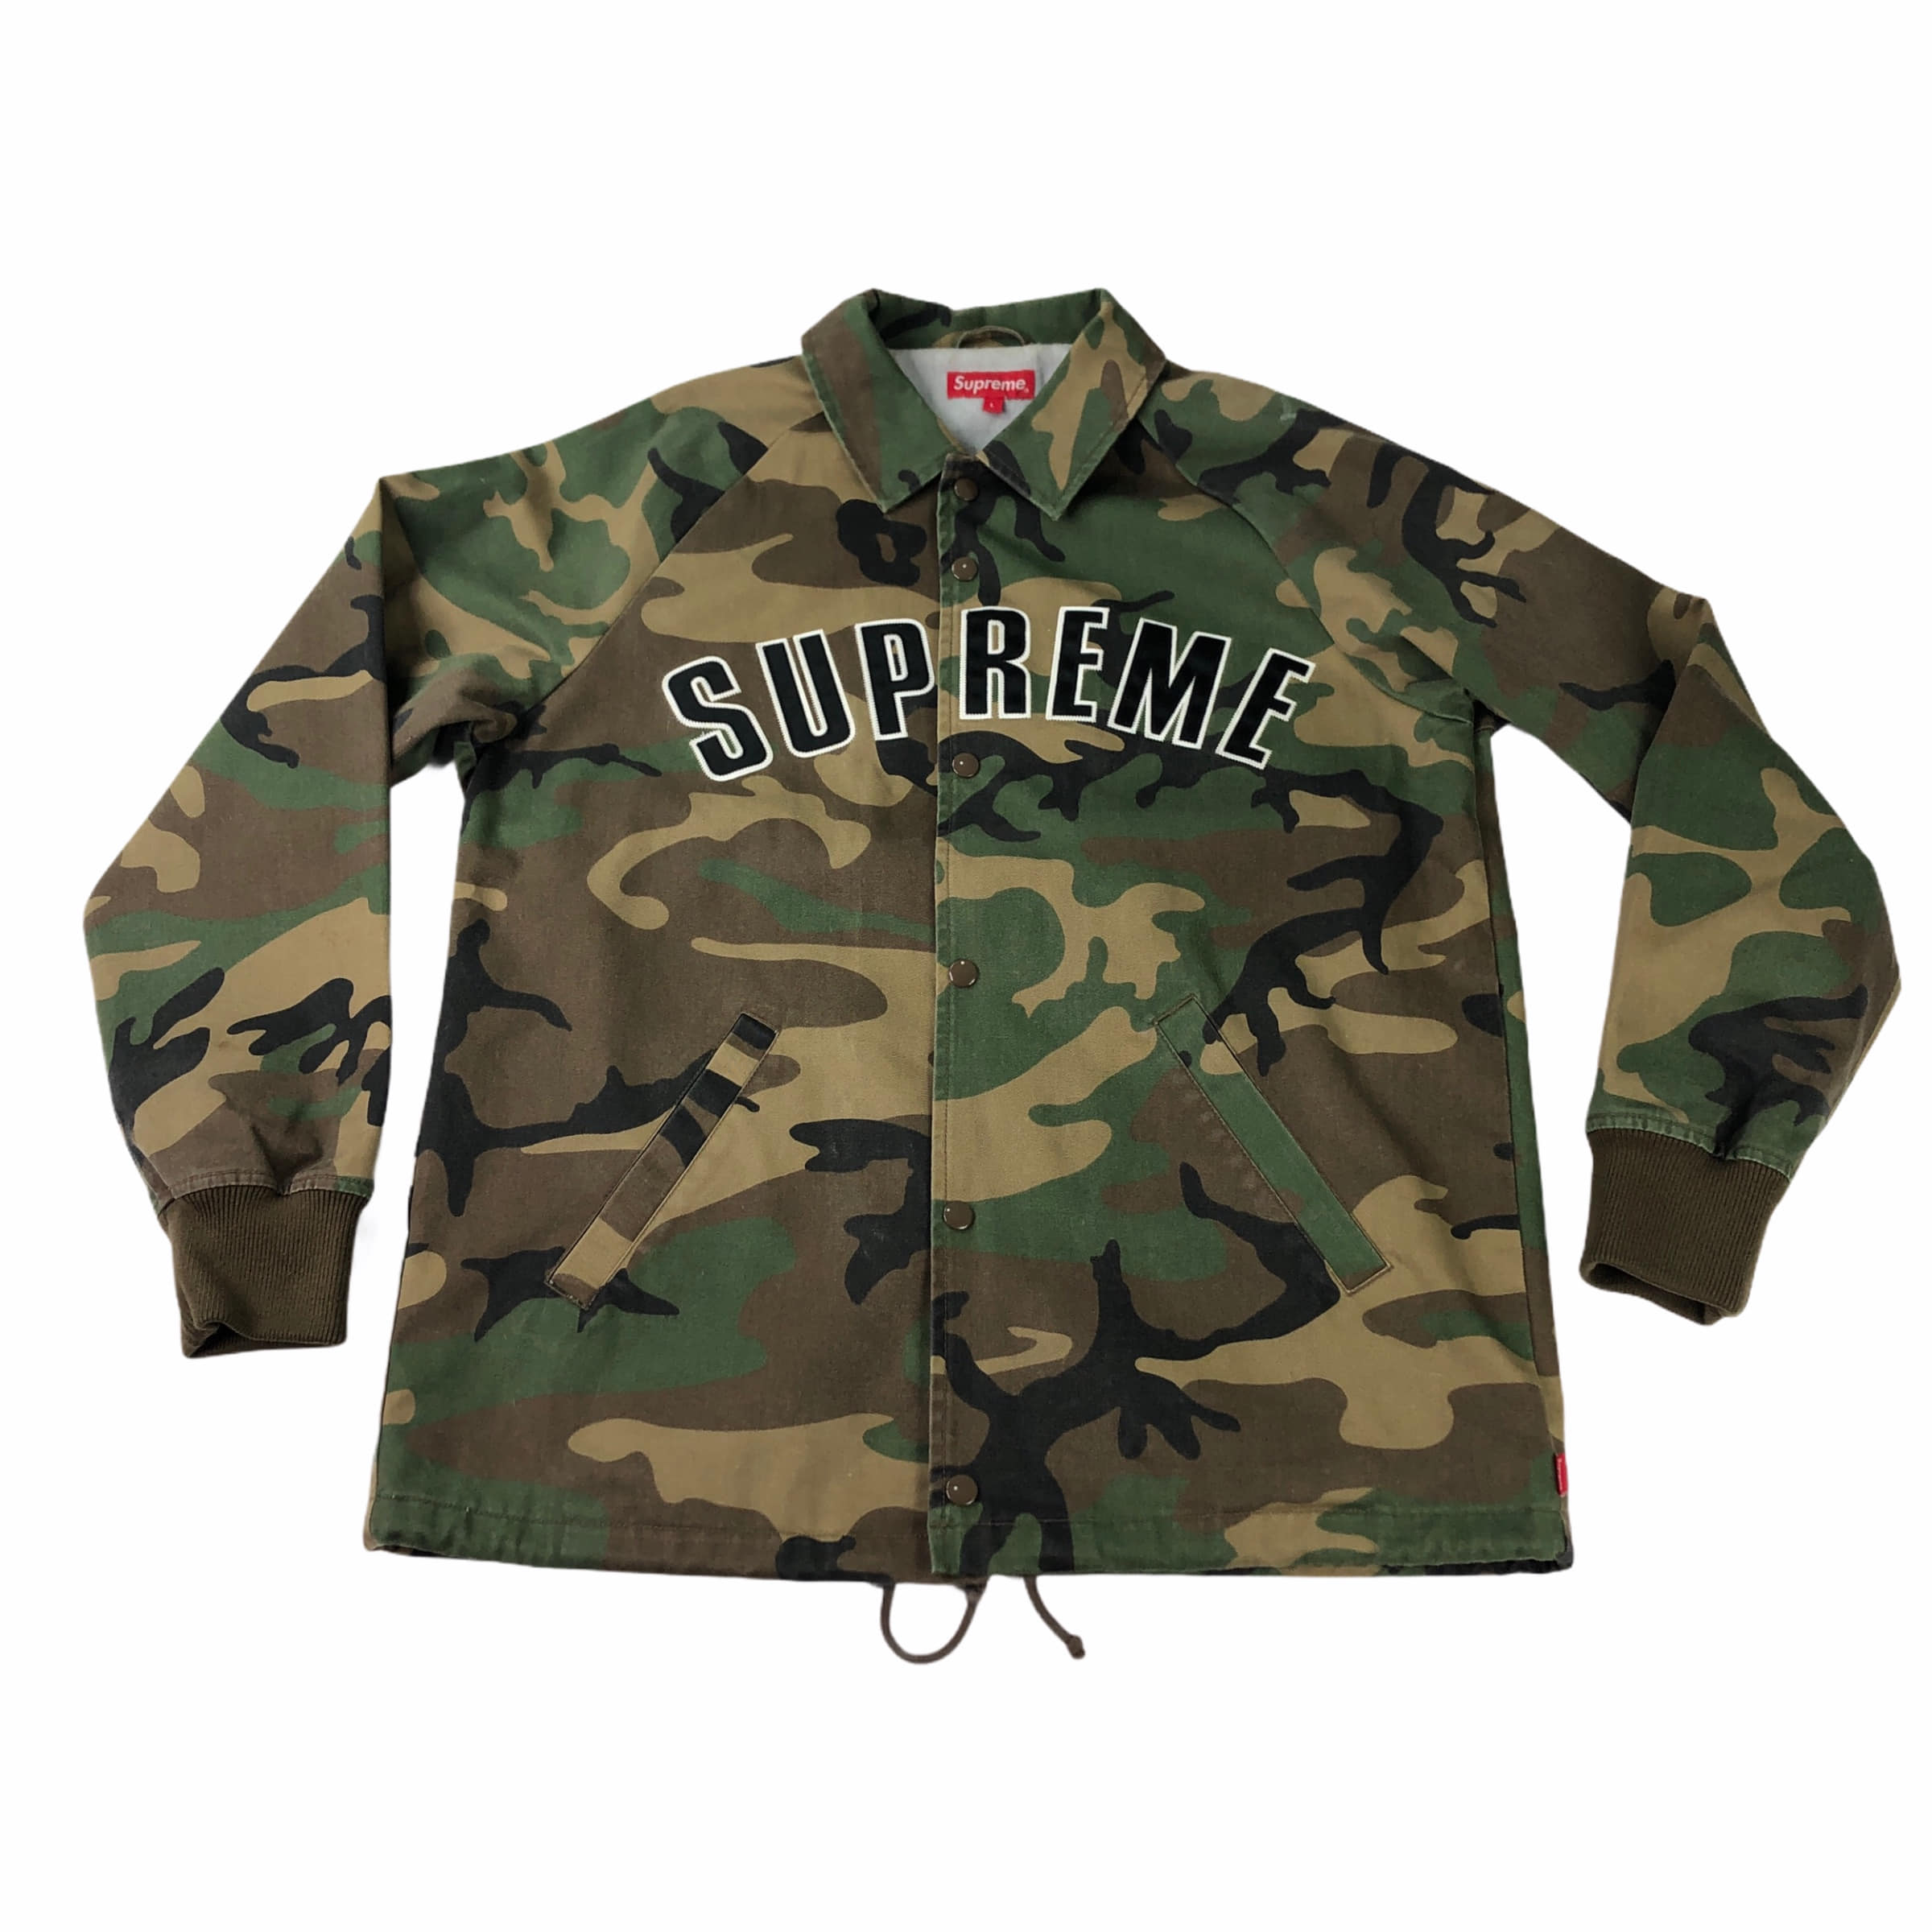 [Supreme] Camouflage Cotton Coach Jacket - Size L